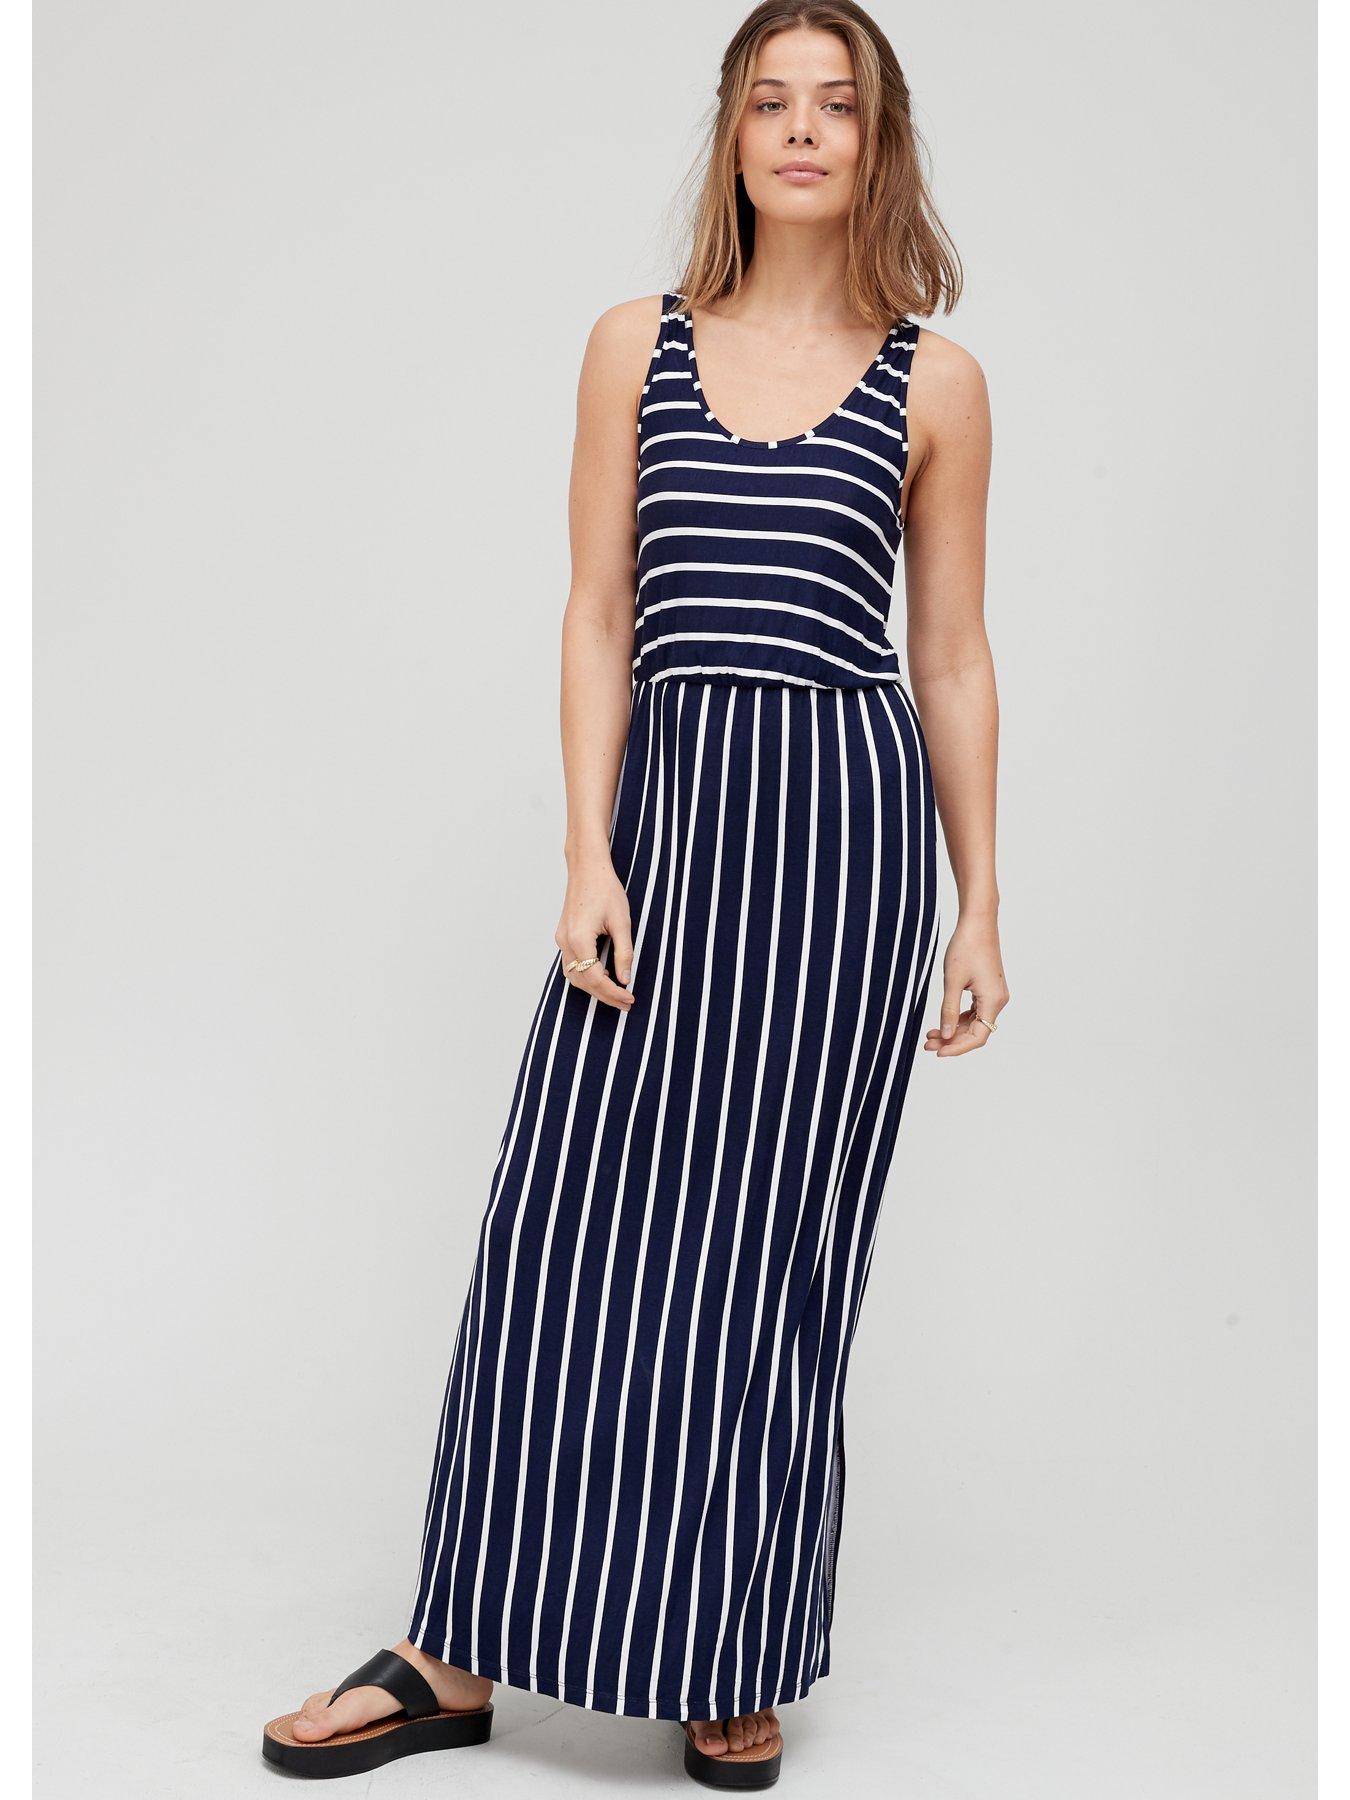 Willsa Women Casual Stripes Sleeveless Sundress Long Maxi Beach Dress 